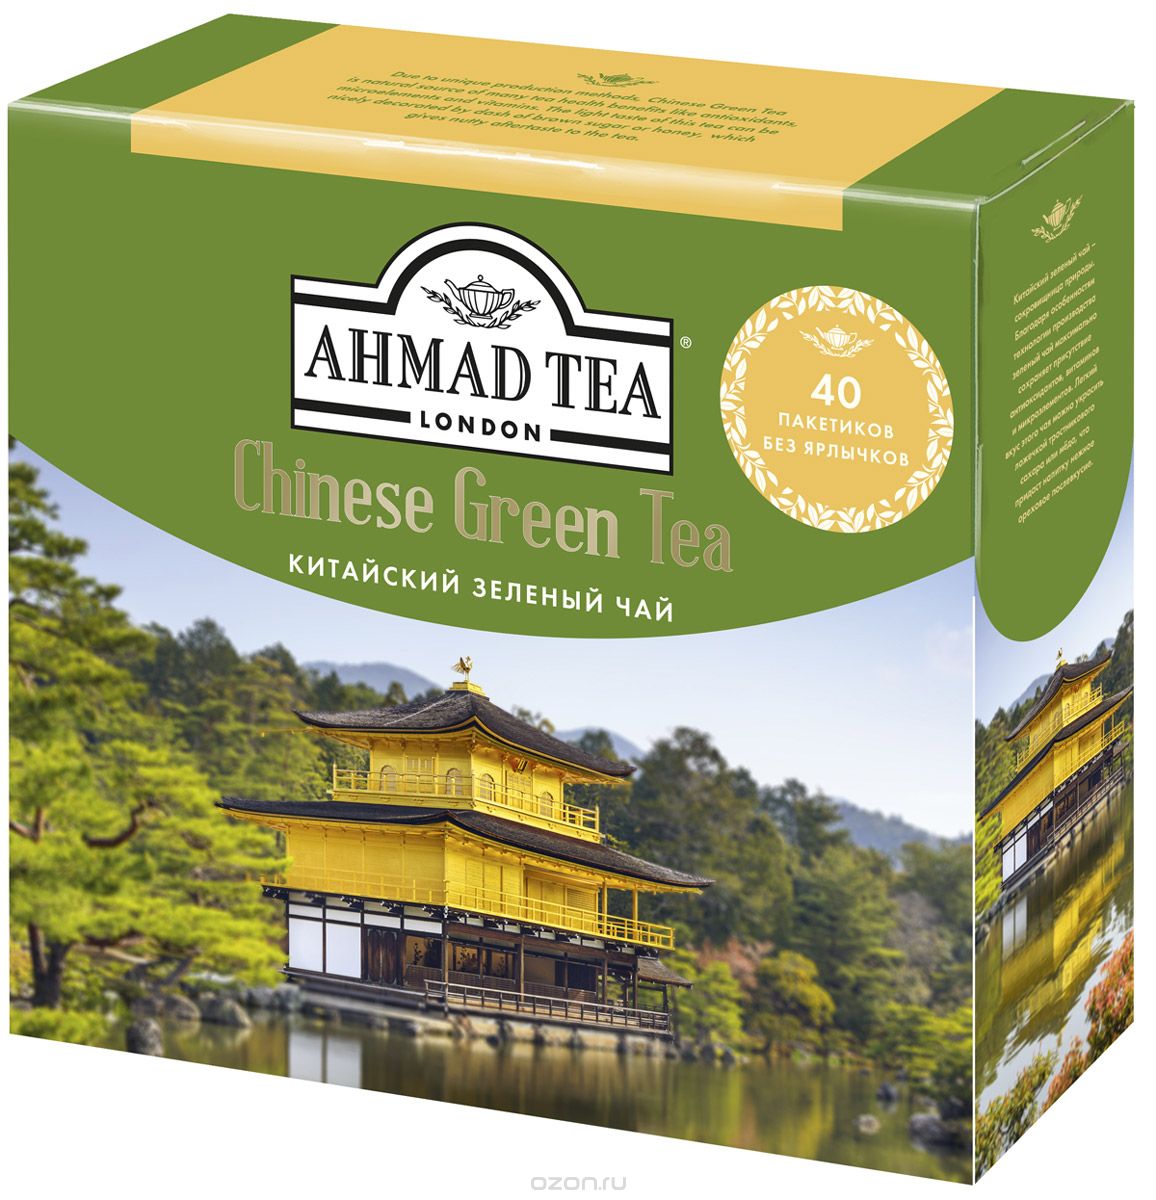 Ahmad Tea         , 40 